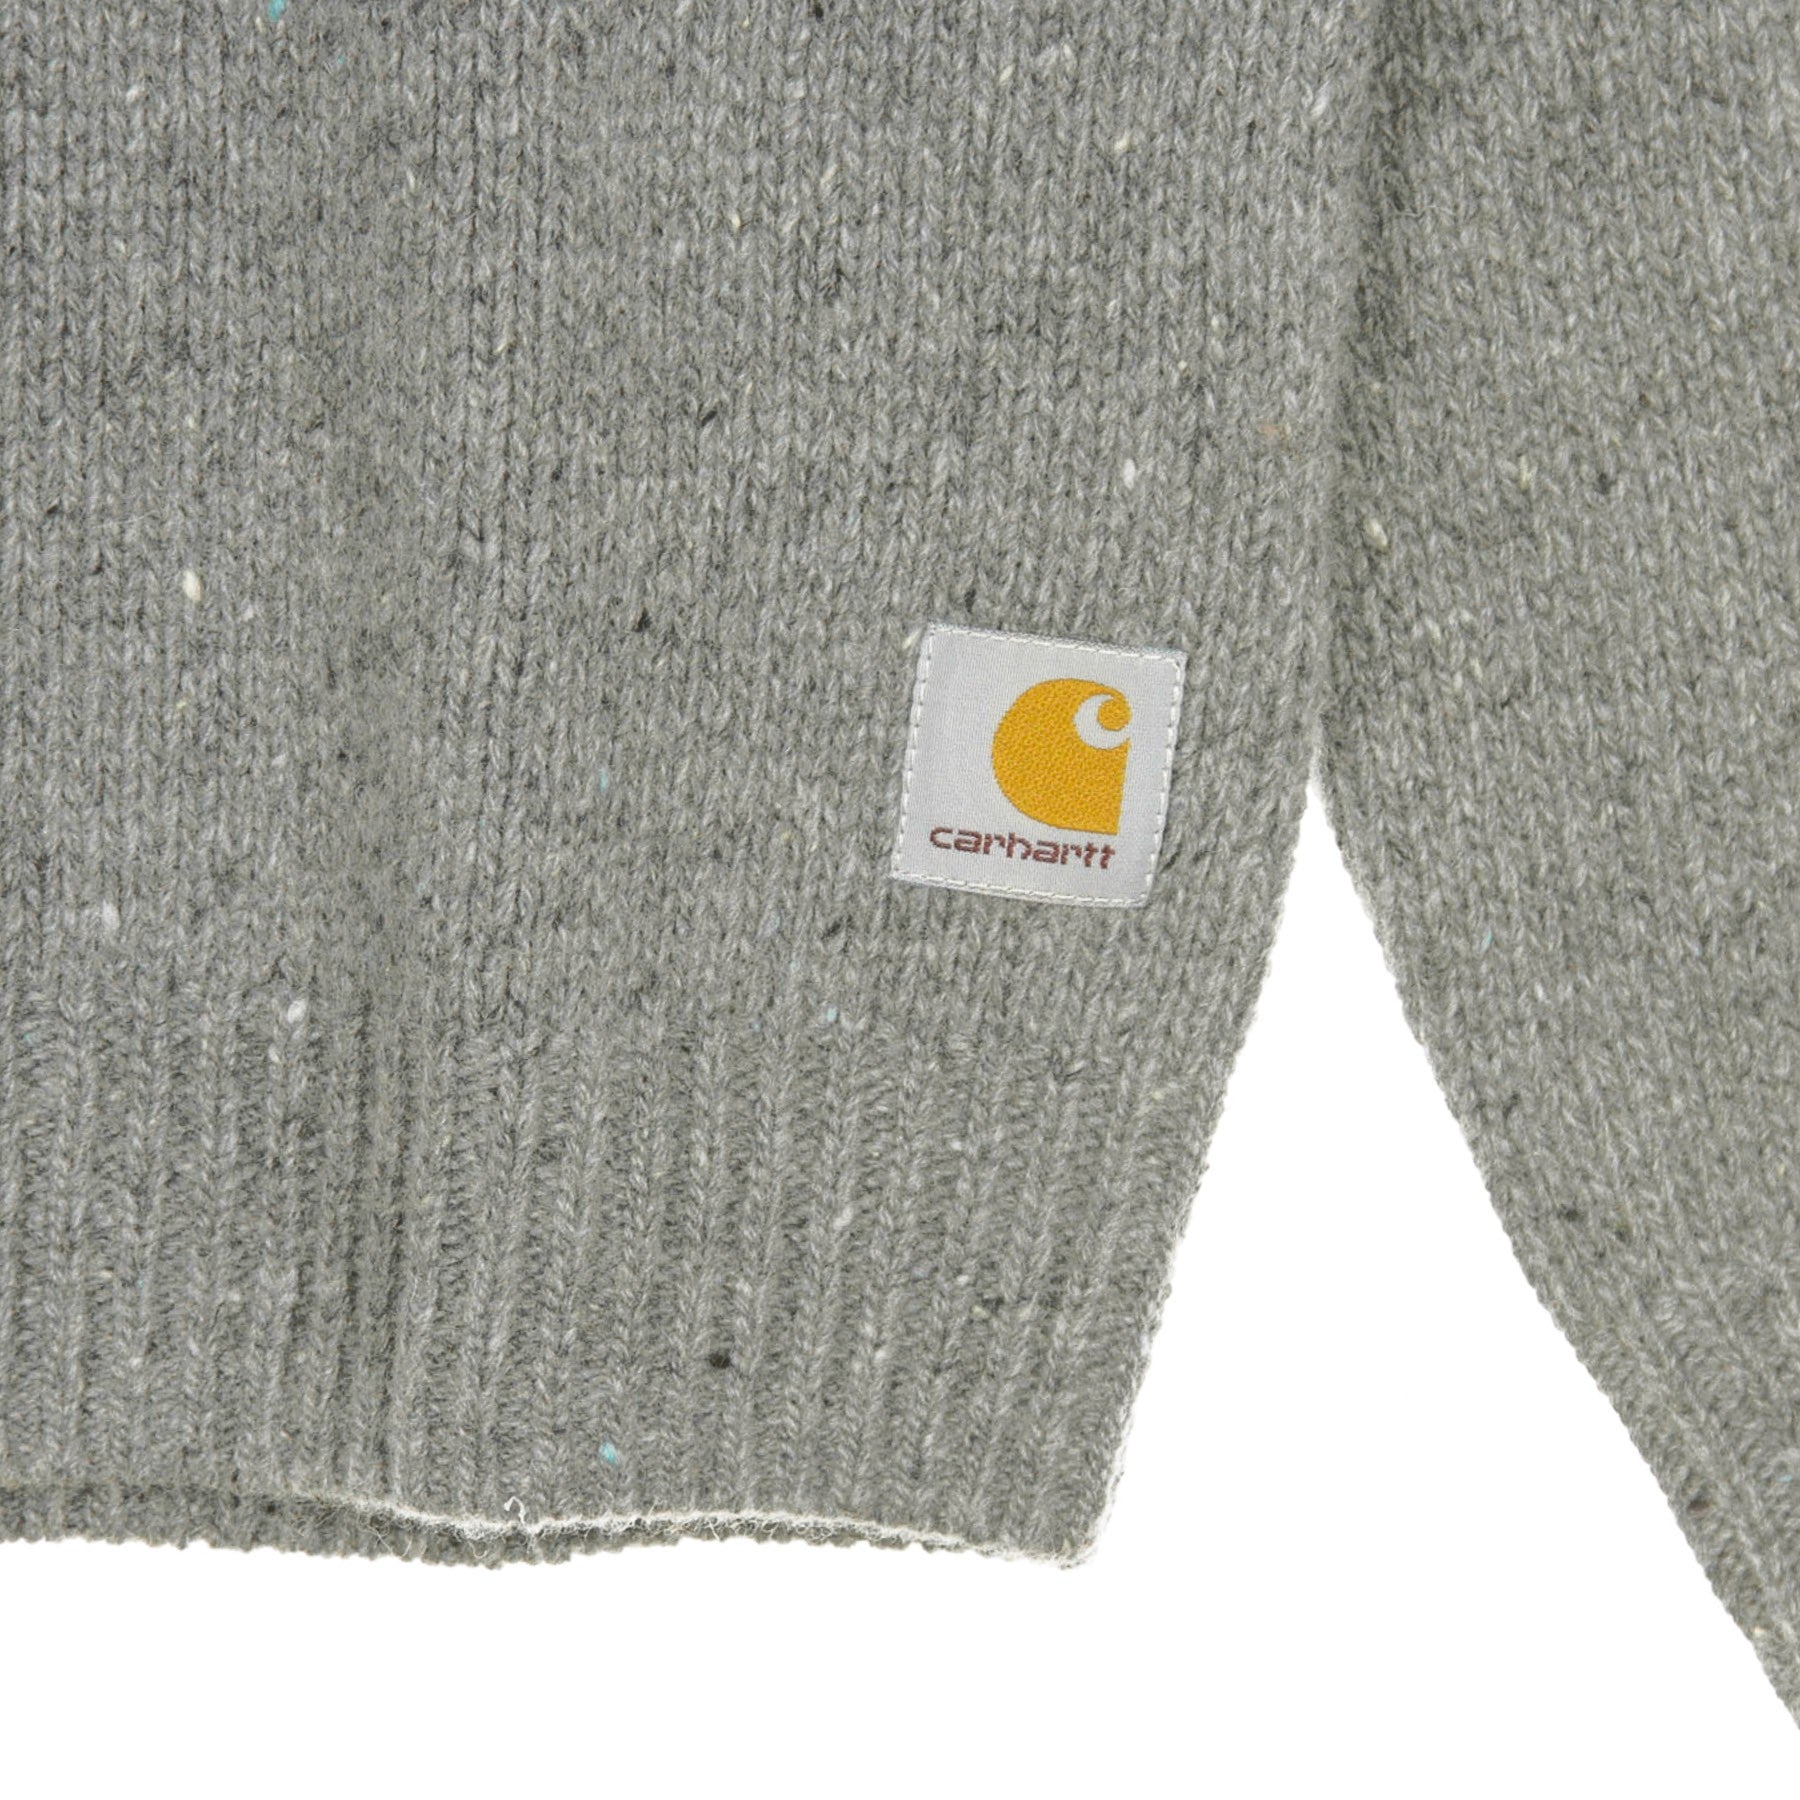 Maglione Uomo Anglistic Sweater Dark Grey Heather I010977